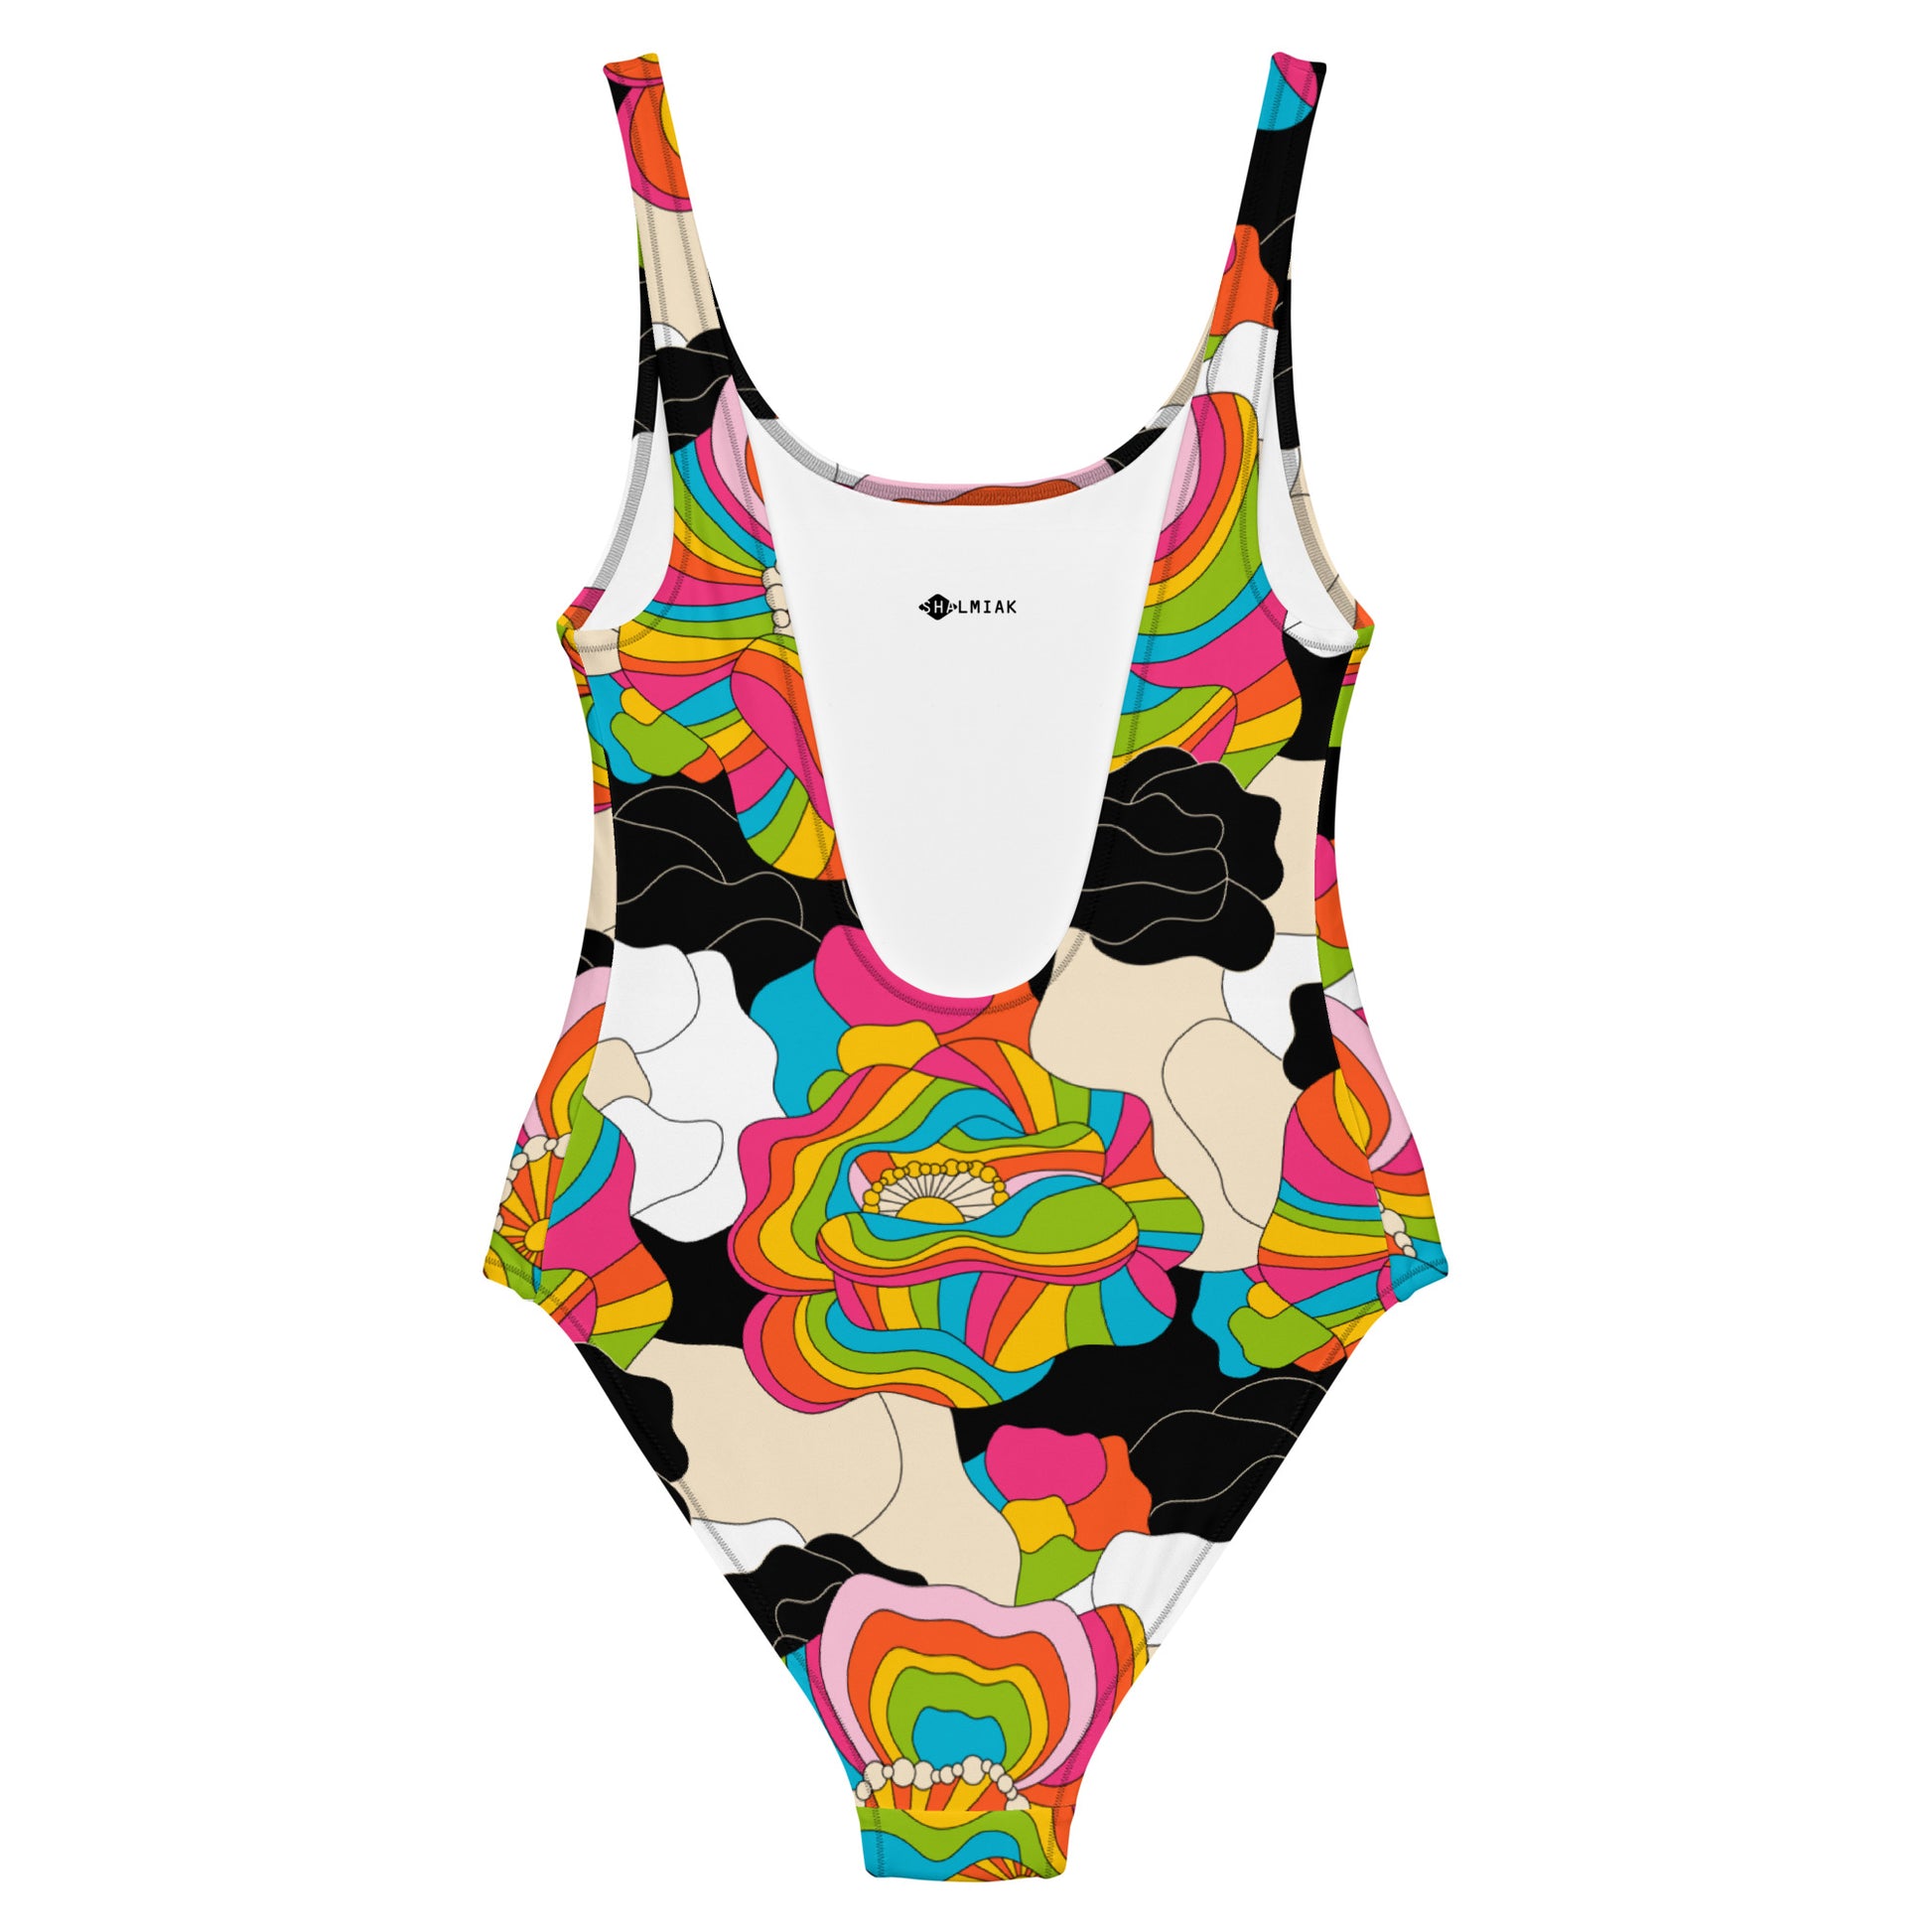 RAINBOW POPPY - One-Piece Swimsuit